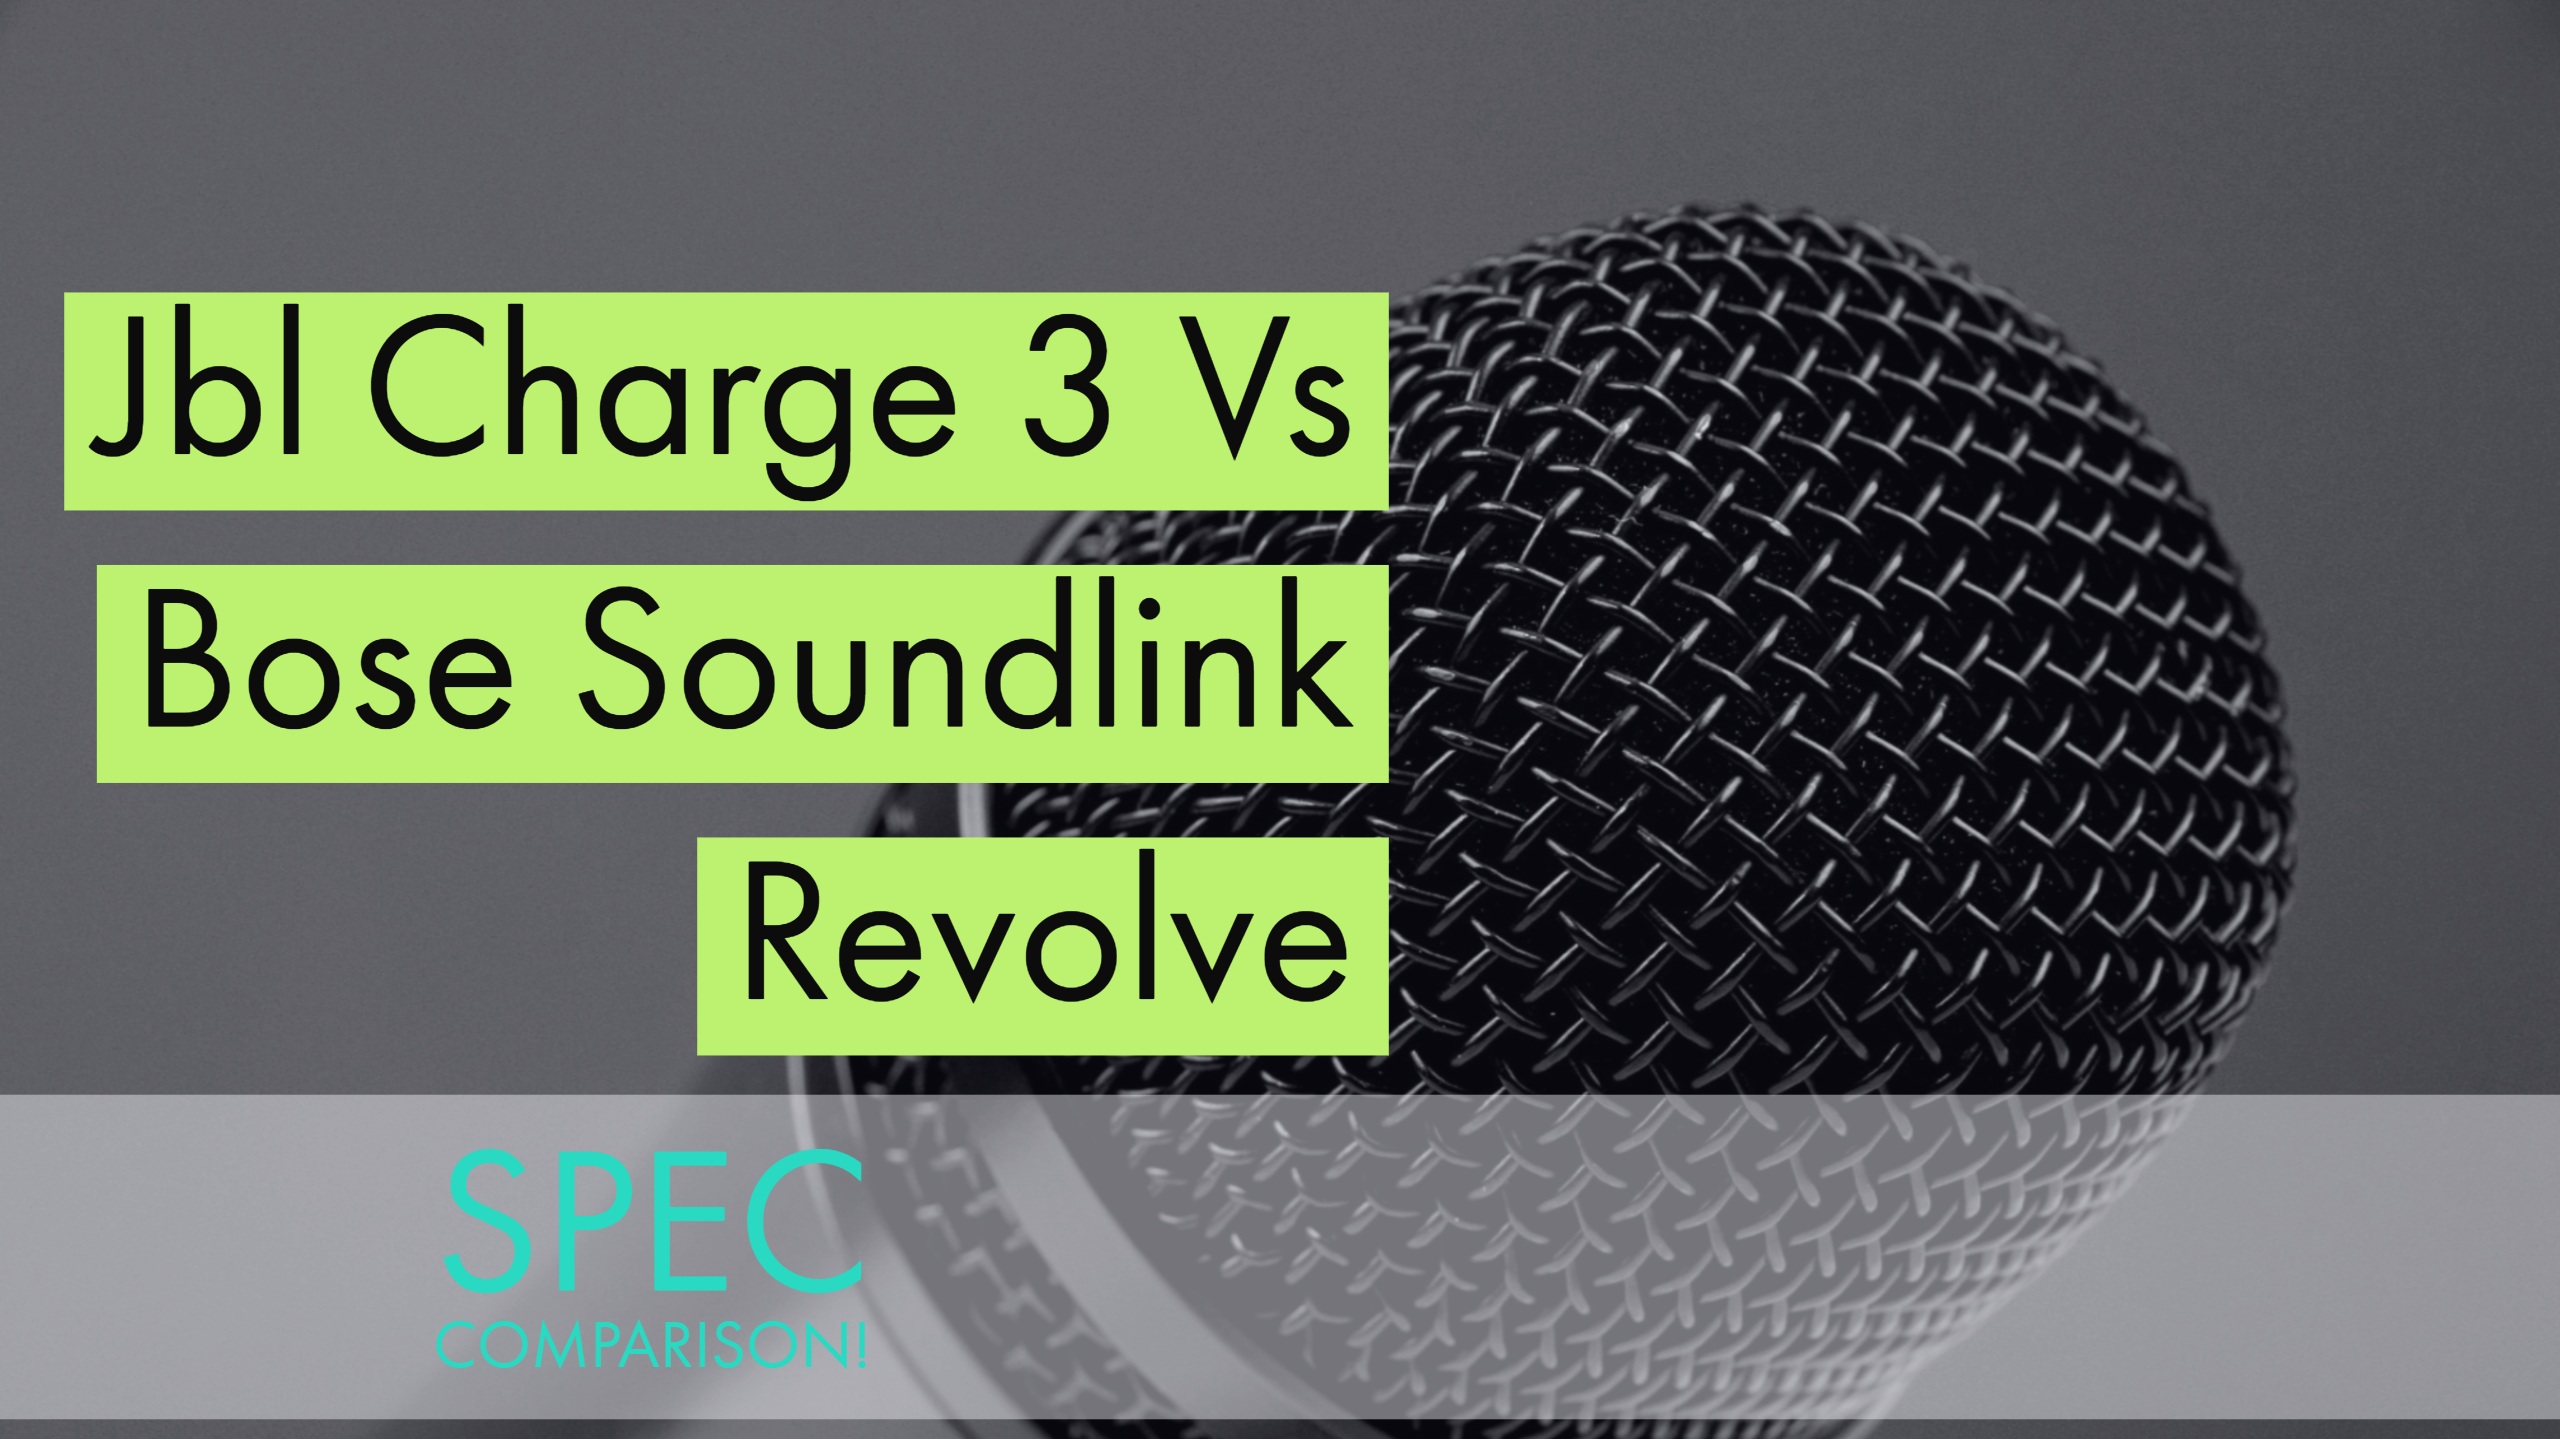 Jbl Charge 3 Vs Bose Soundlink Revolve